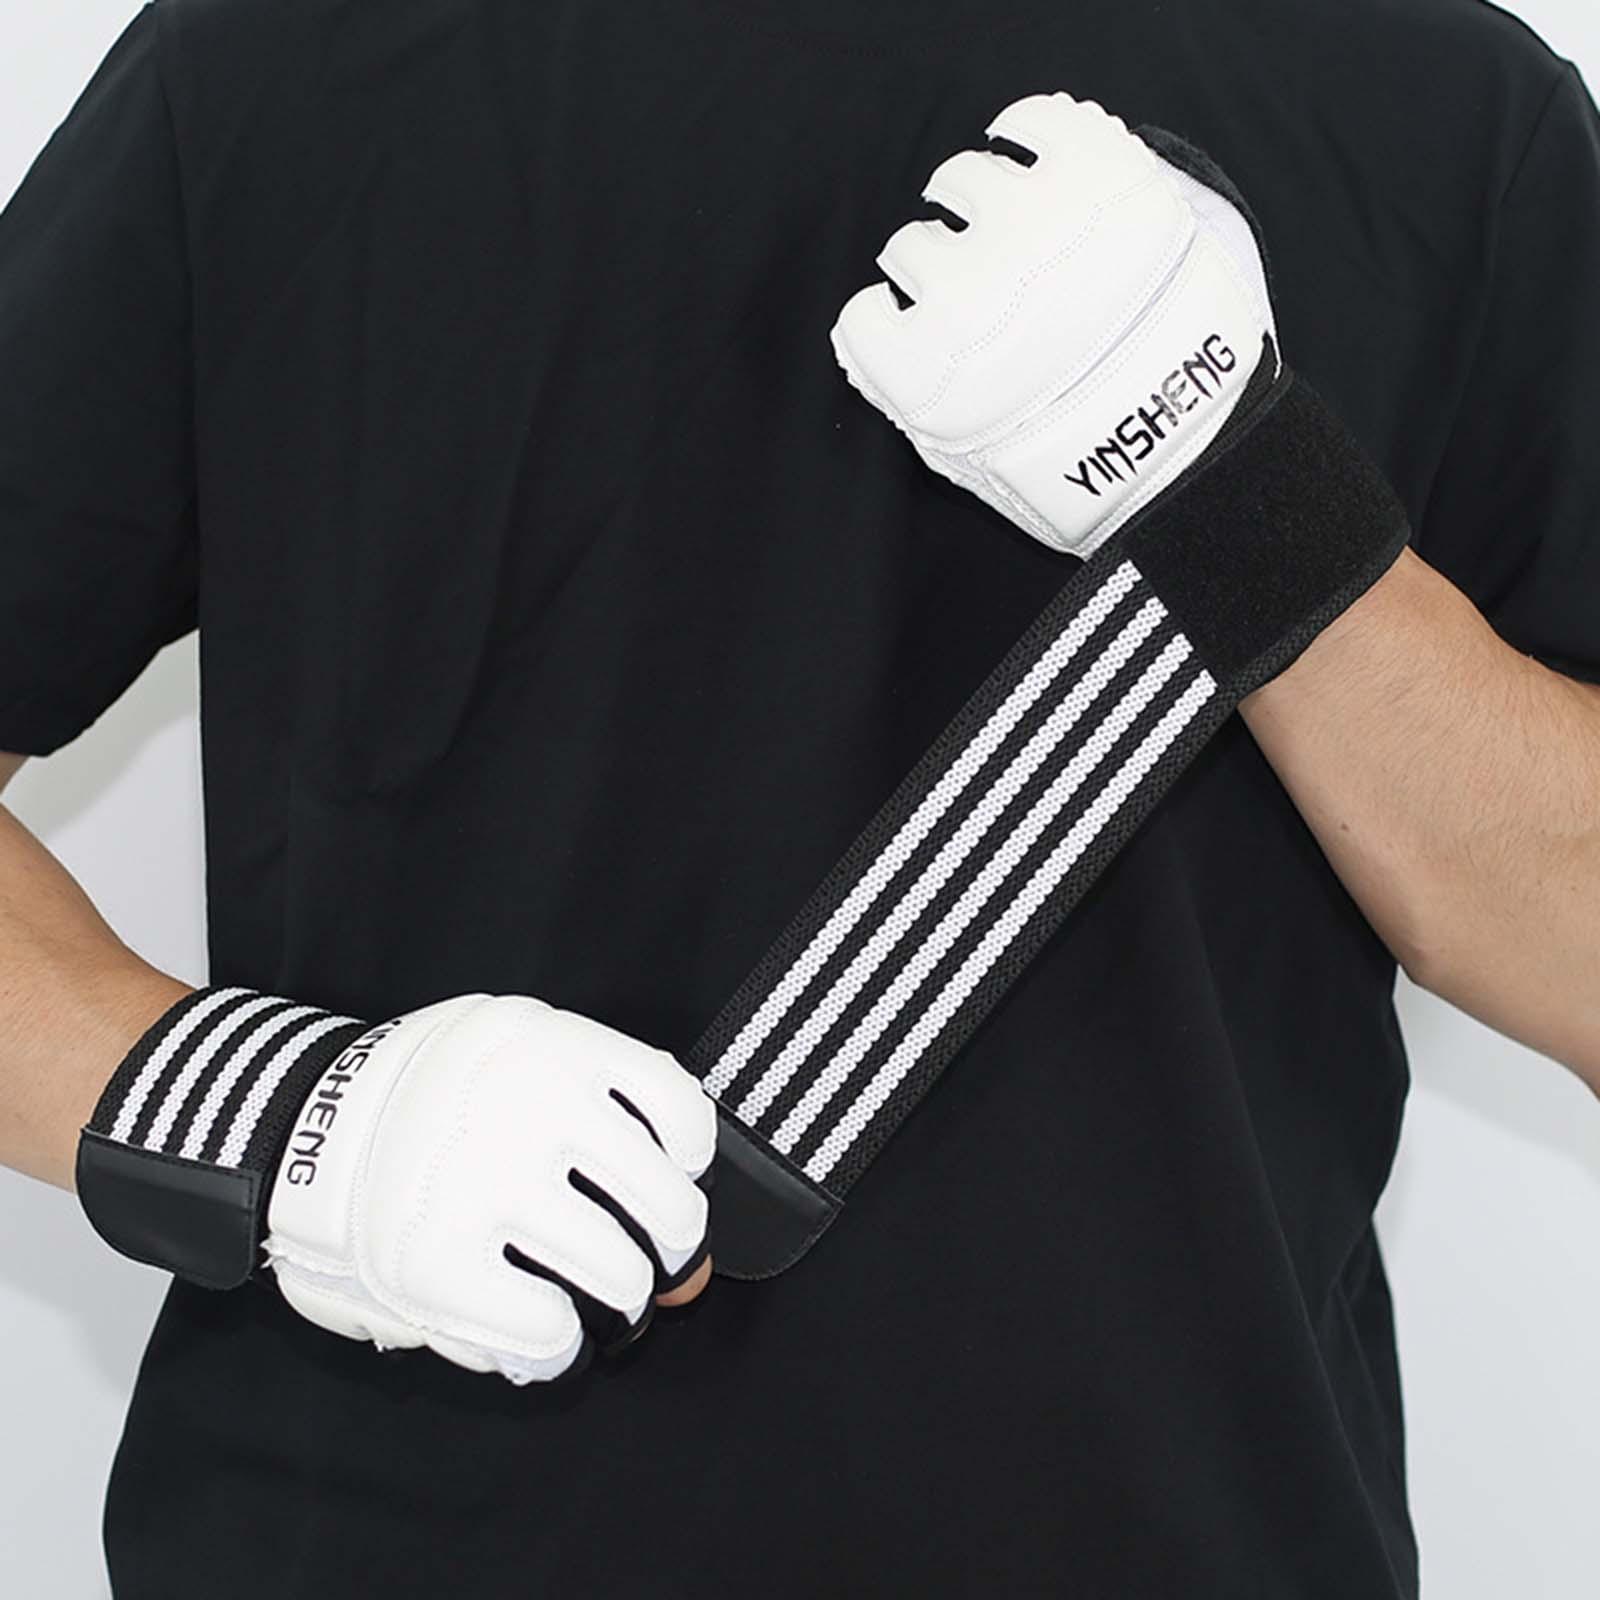 Kickboxing Gloves Half Finger Fighting Gloves for Taekwondo Punching Bag Mma XS White